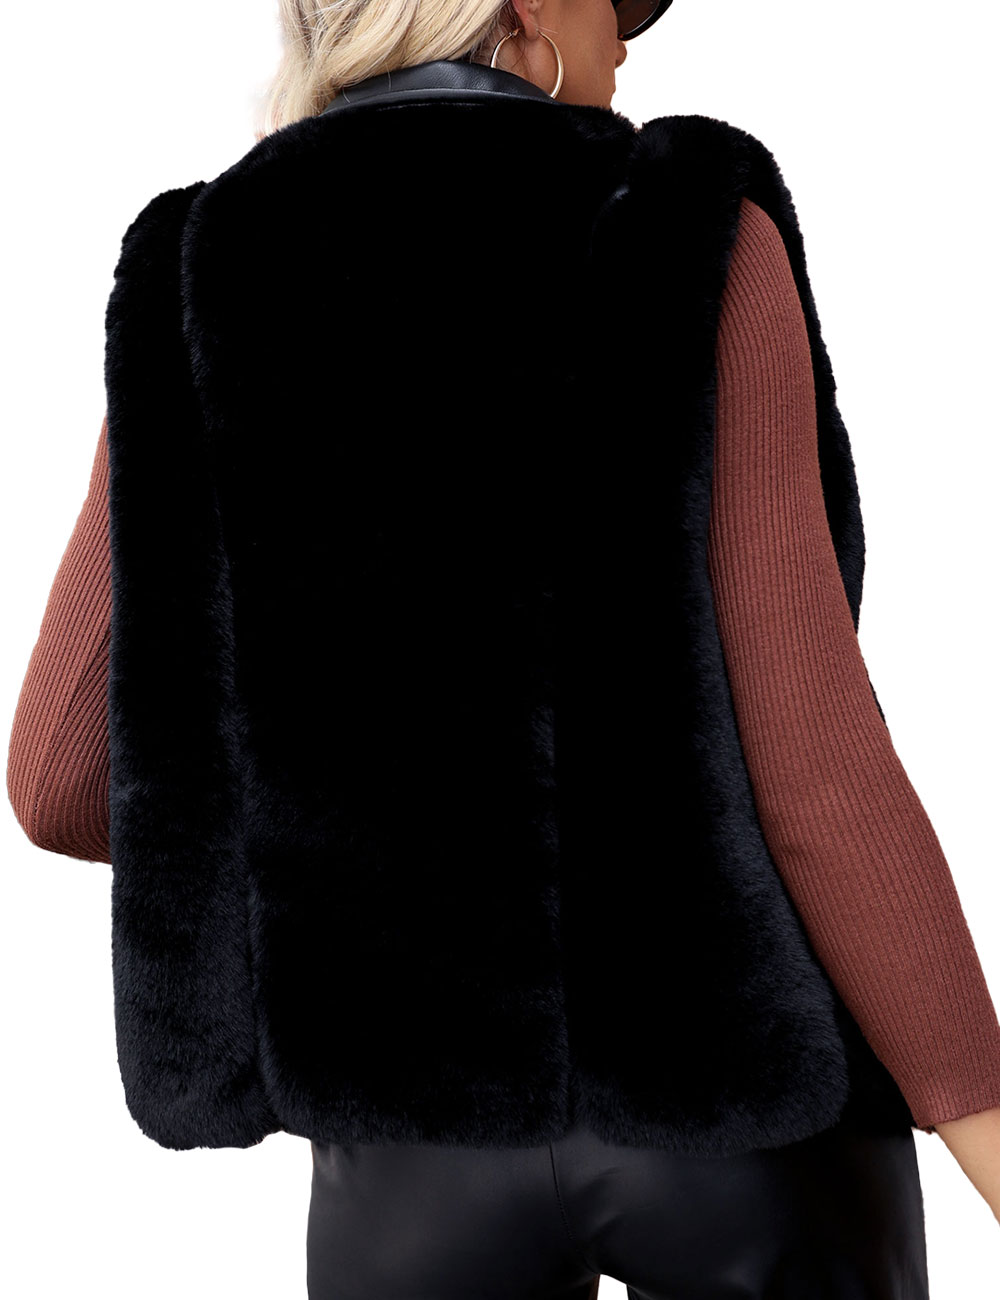 Giolshon Women's Faux Fur Vest Coat Short Sleeveless Jacket Outwear Warm Waistcoat - image 2 of 5